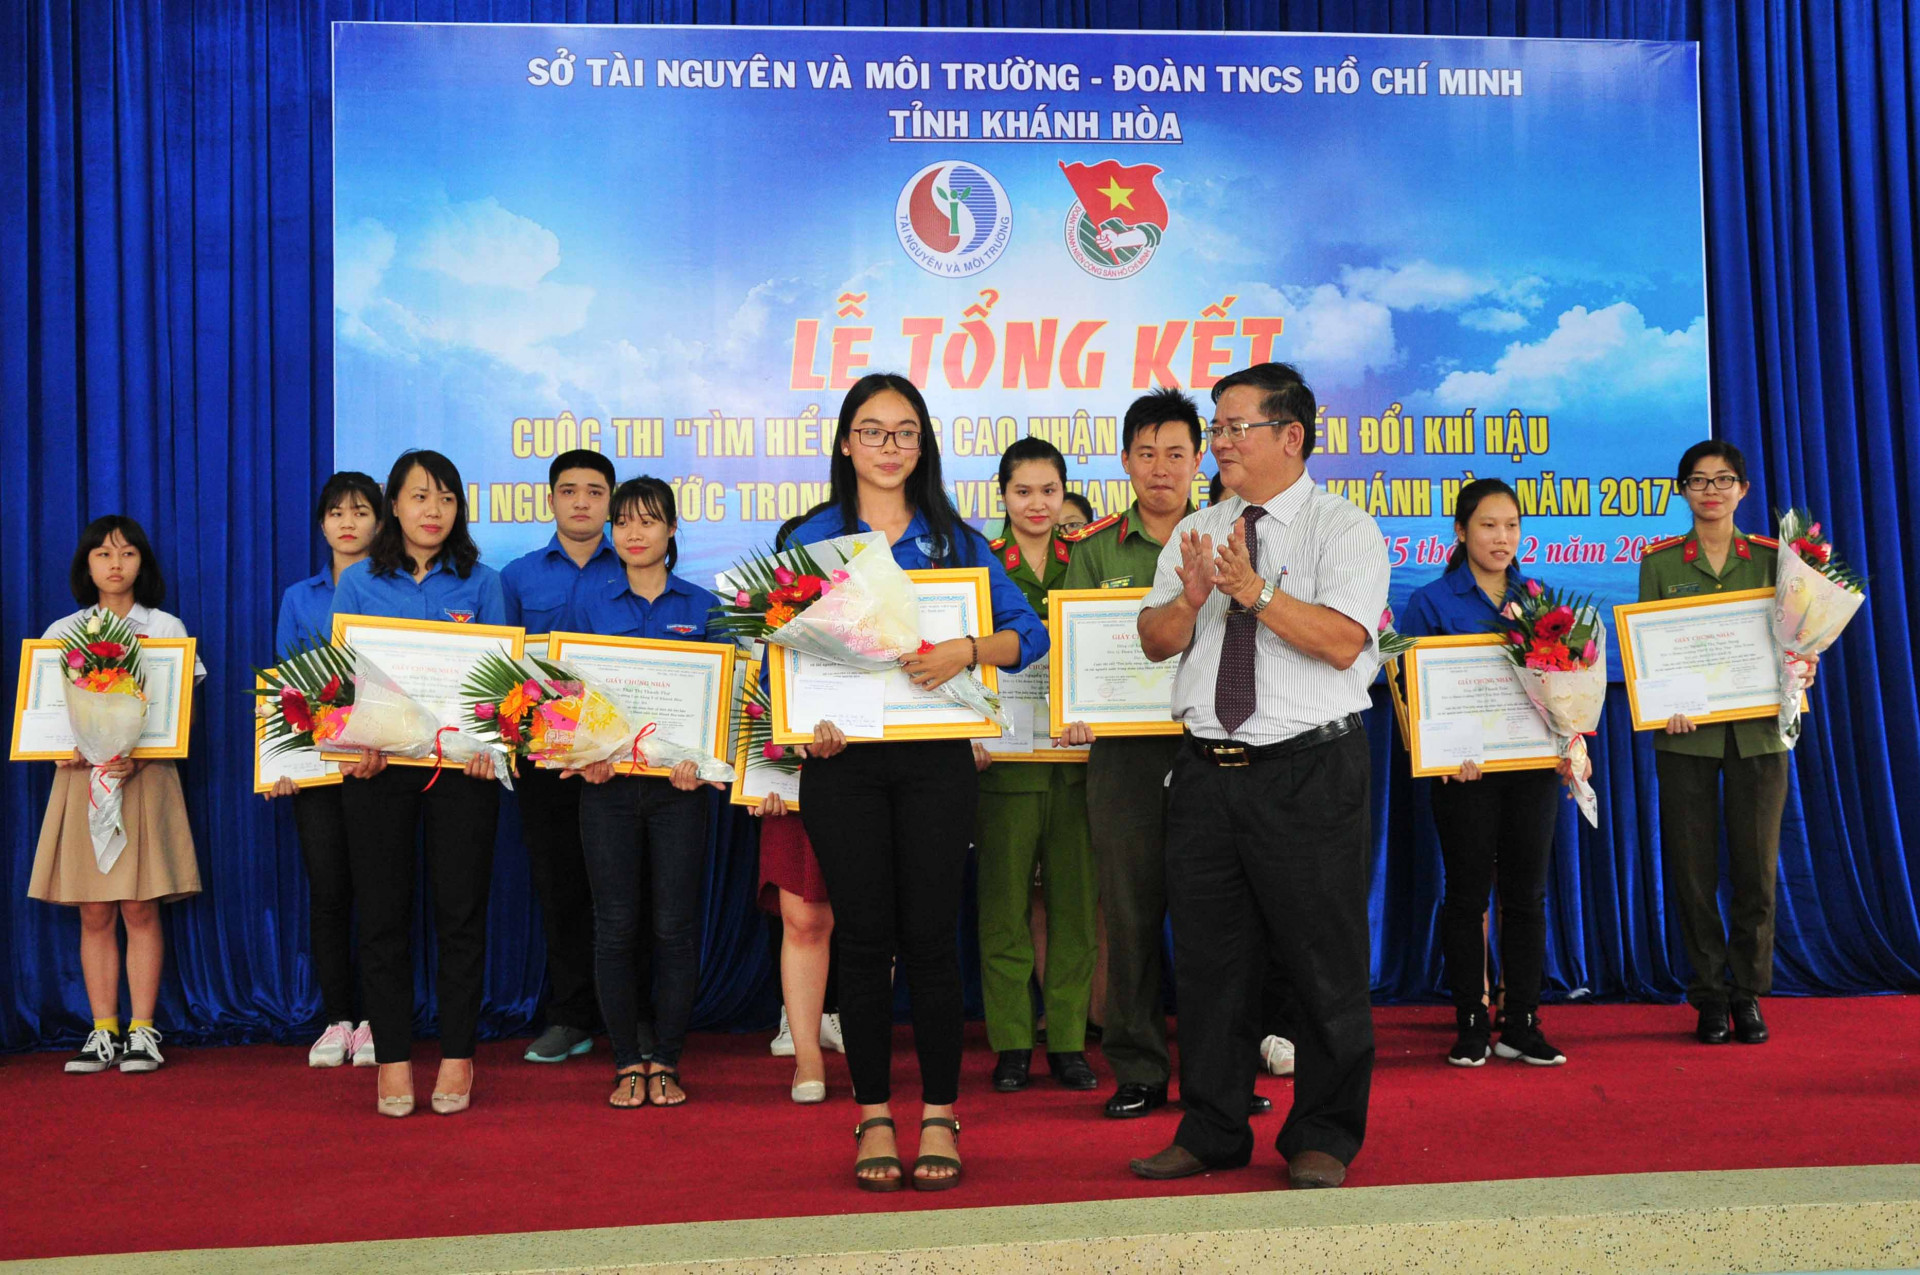 Ban tổ chức trao giải nhất cá nhân cho thí sinh Trần Thị Thanh Nhi